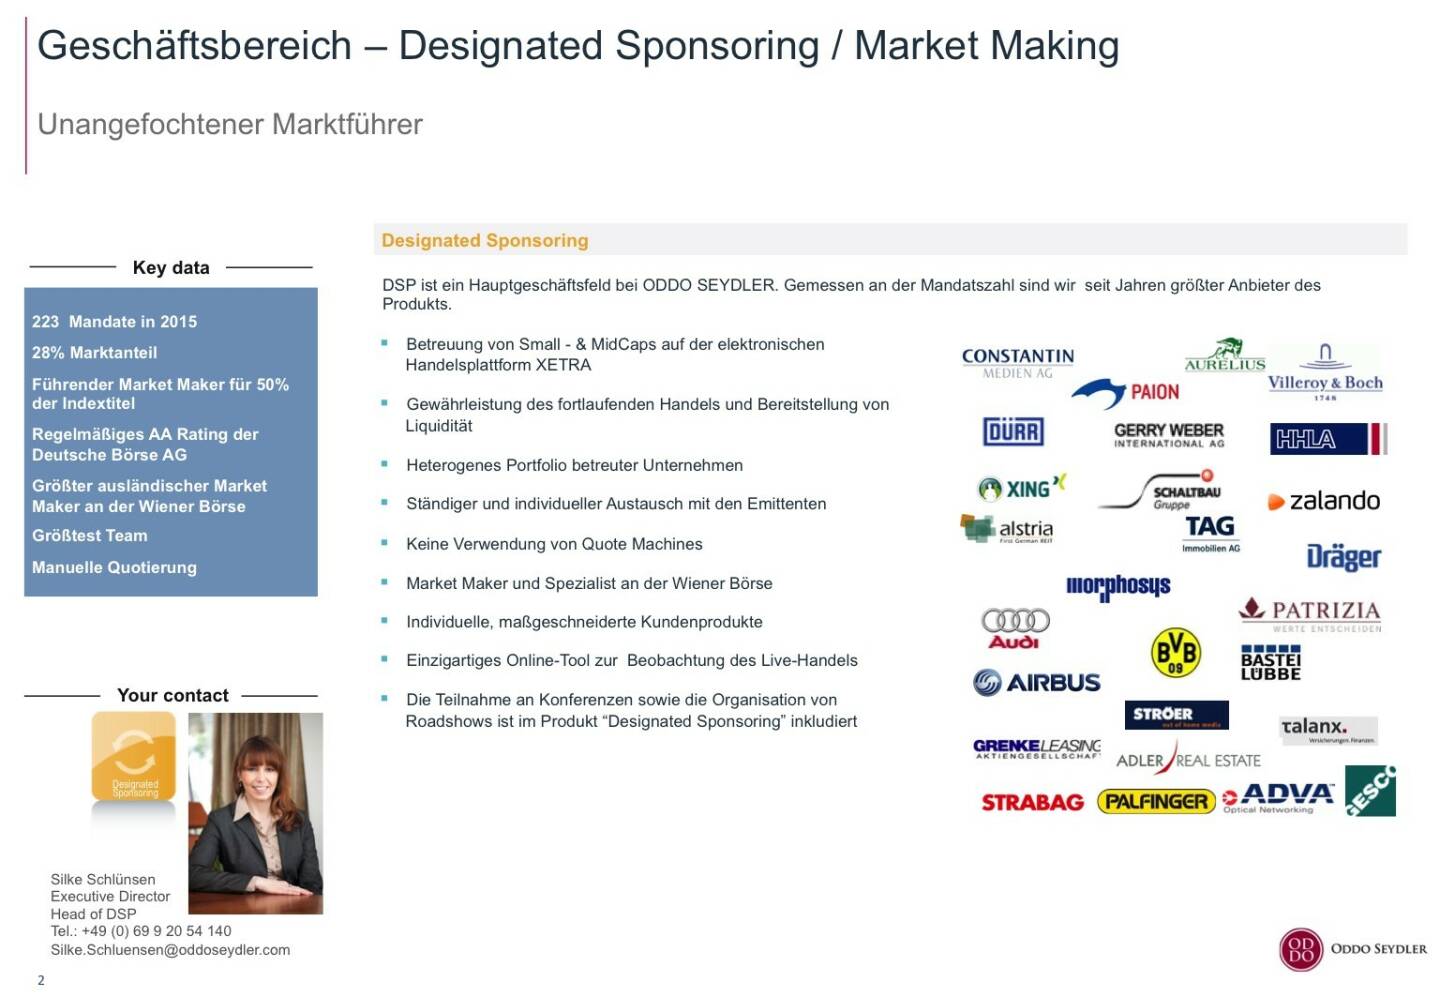 Oddo Seydler Geschäftsbereich – Designated Sponsoring / Market Making